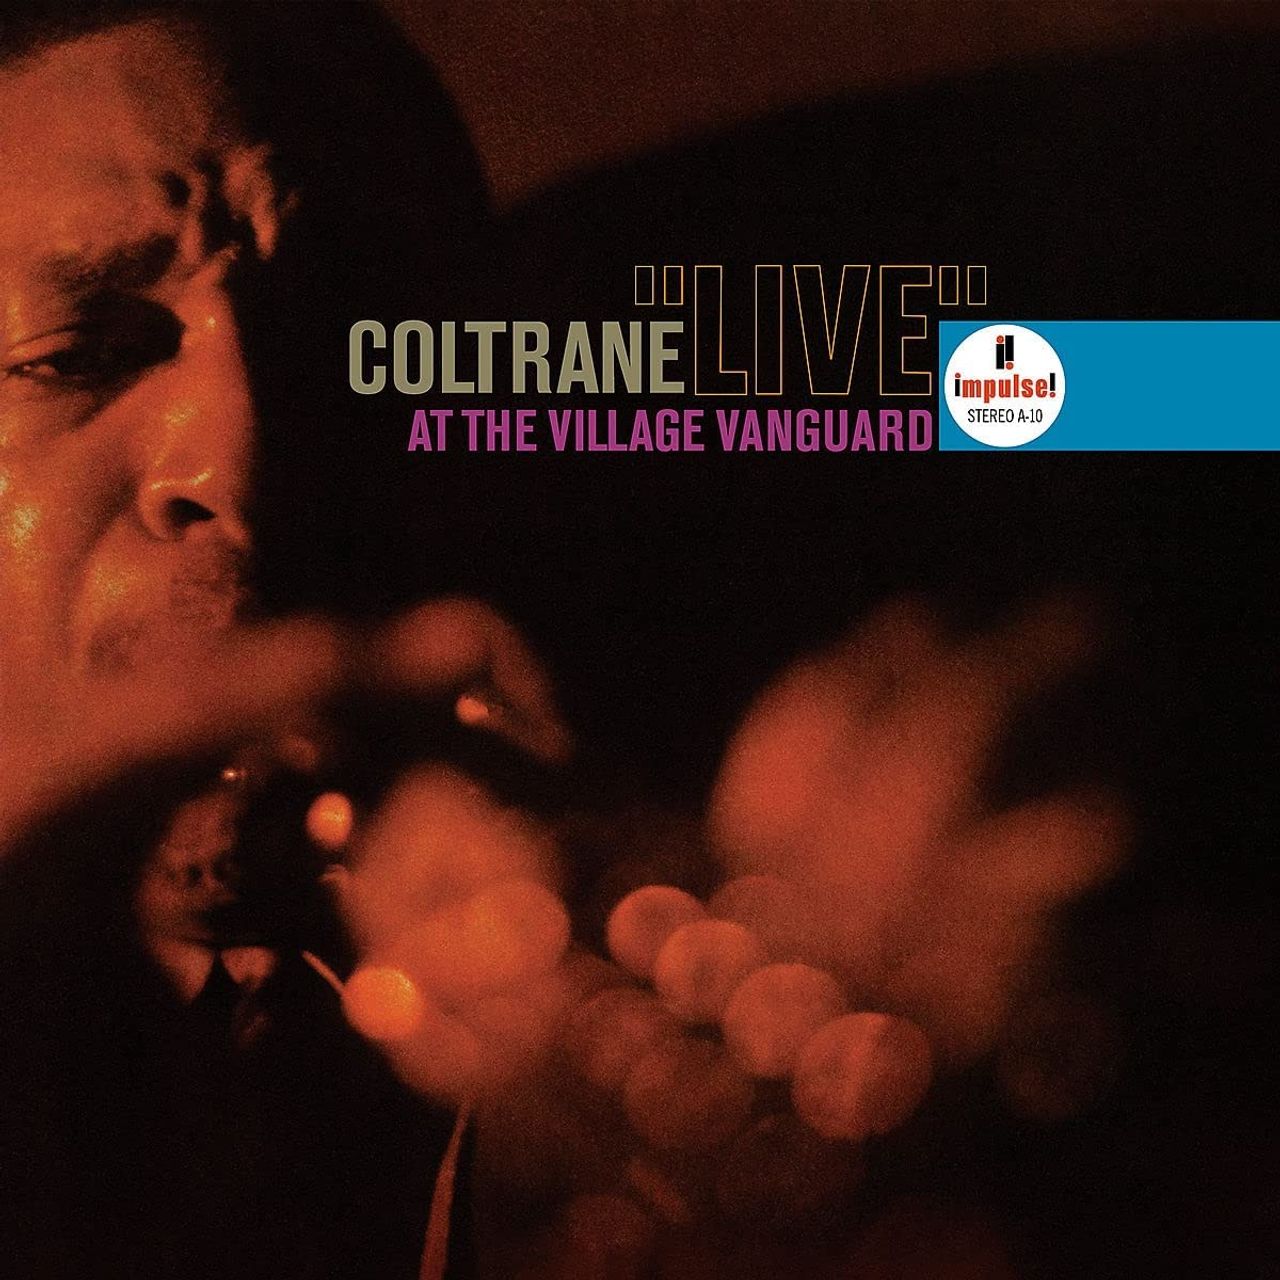 John Coltrane Live At The Village Vanguard - Acoustic Sounds Verve Series - Sealed US vinyl LP album (LP record) JCOLPLI782420